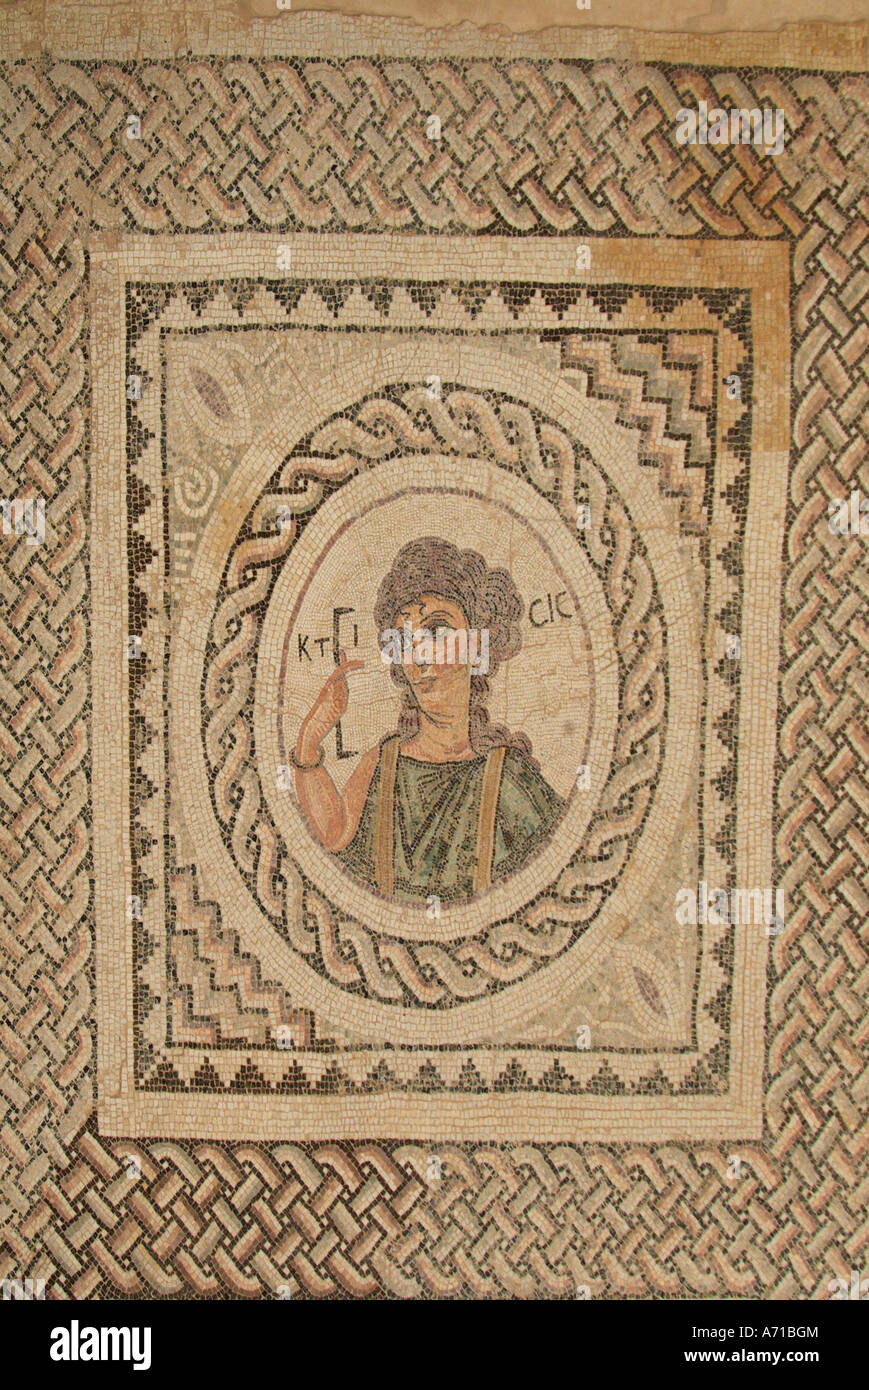 Mosaico di Paphos pafos archeologia romana sito archeologico scavo Cipro greco cipriota grecia Europa Mediterranea stone Foto Stock